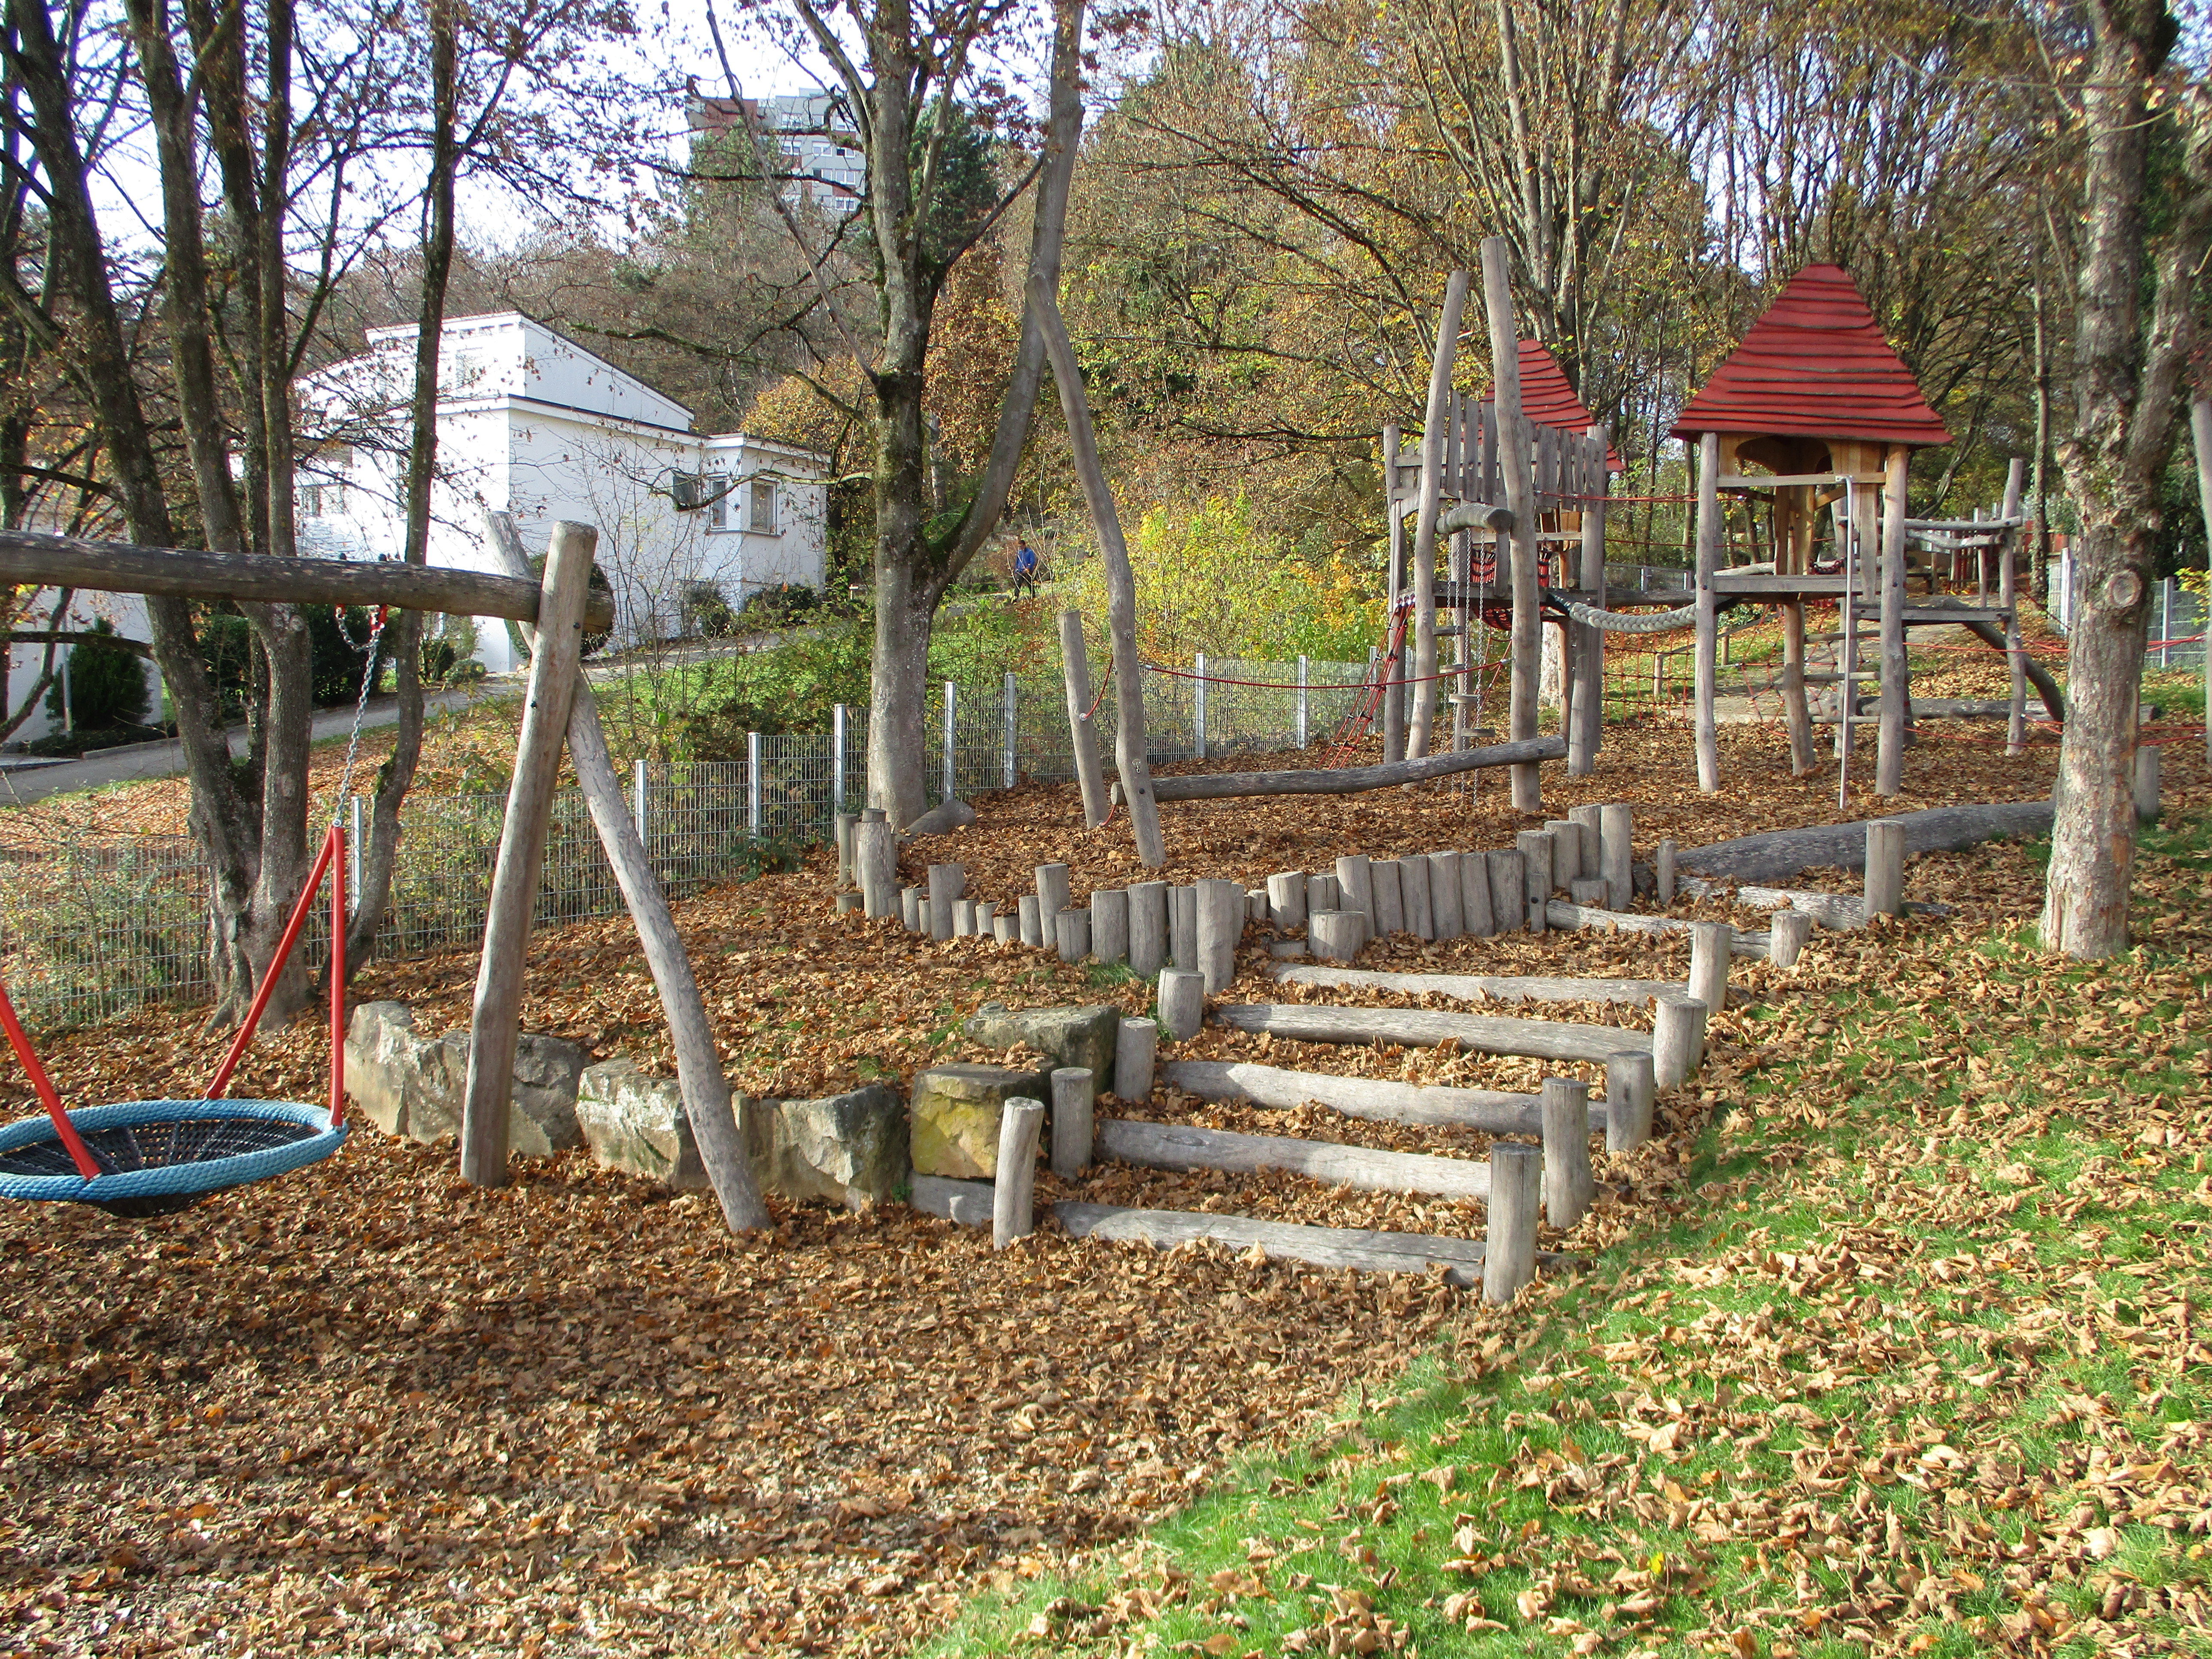 Im Vordergrund ist links eine Nestschaukel, rechts führen Stufen aus Rundholz zu einem Spielgerät aus Holz mit zwei Häuschen zum balancieren und klettern